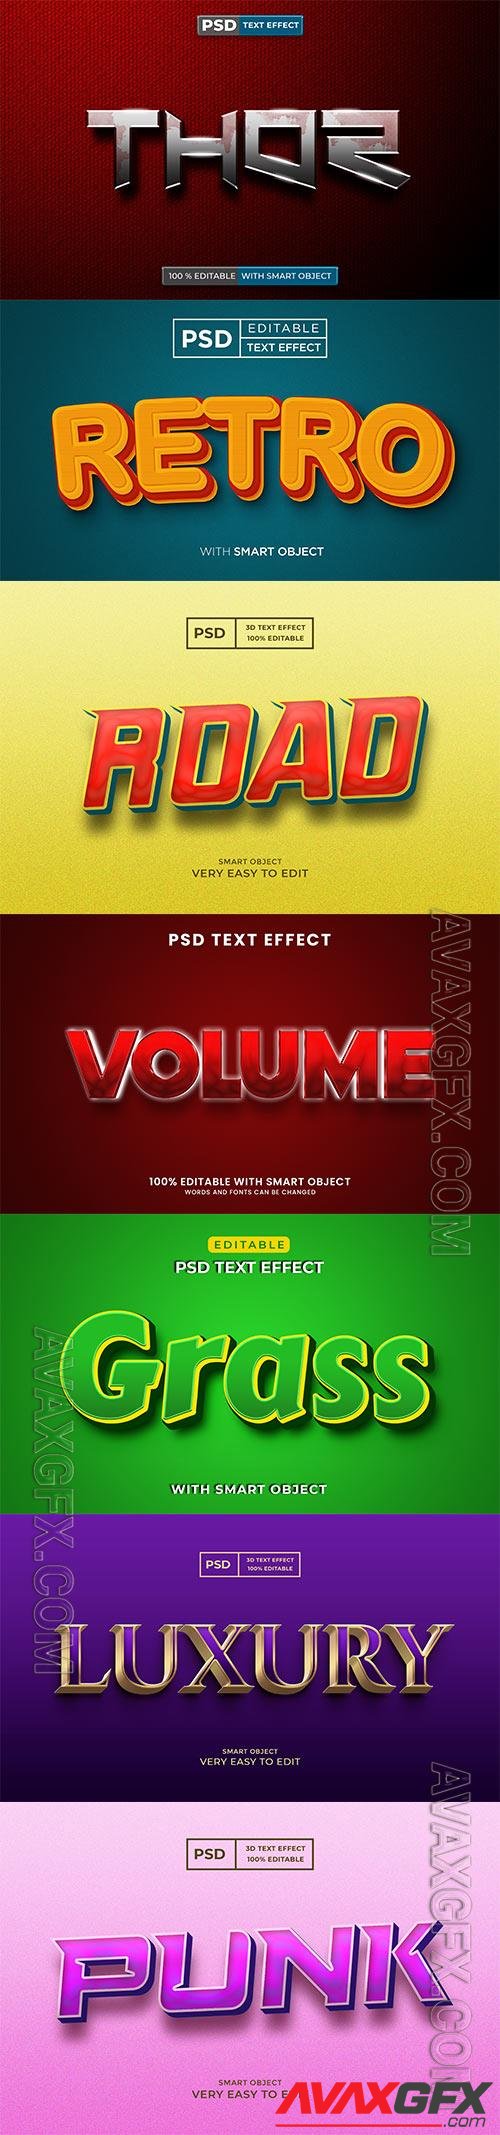 Psd text effect set vol 204